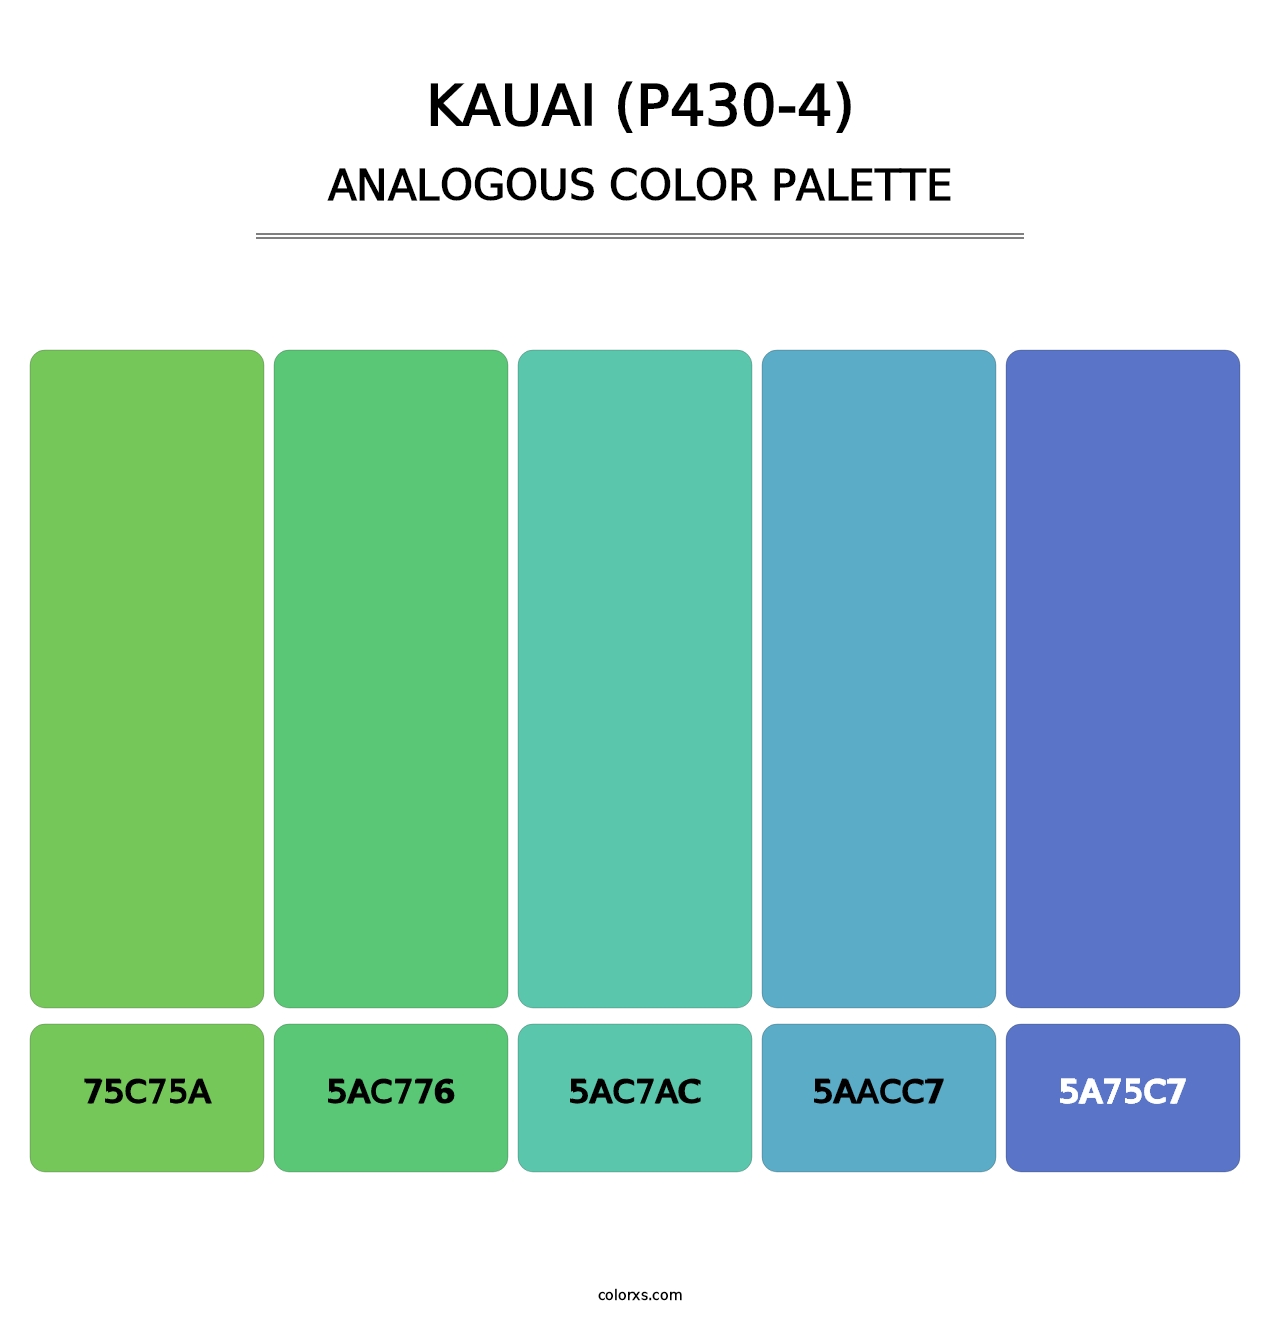 Kauai (P430-4) - Analogous Color Palette